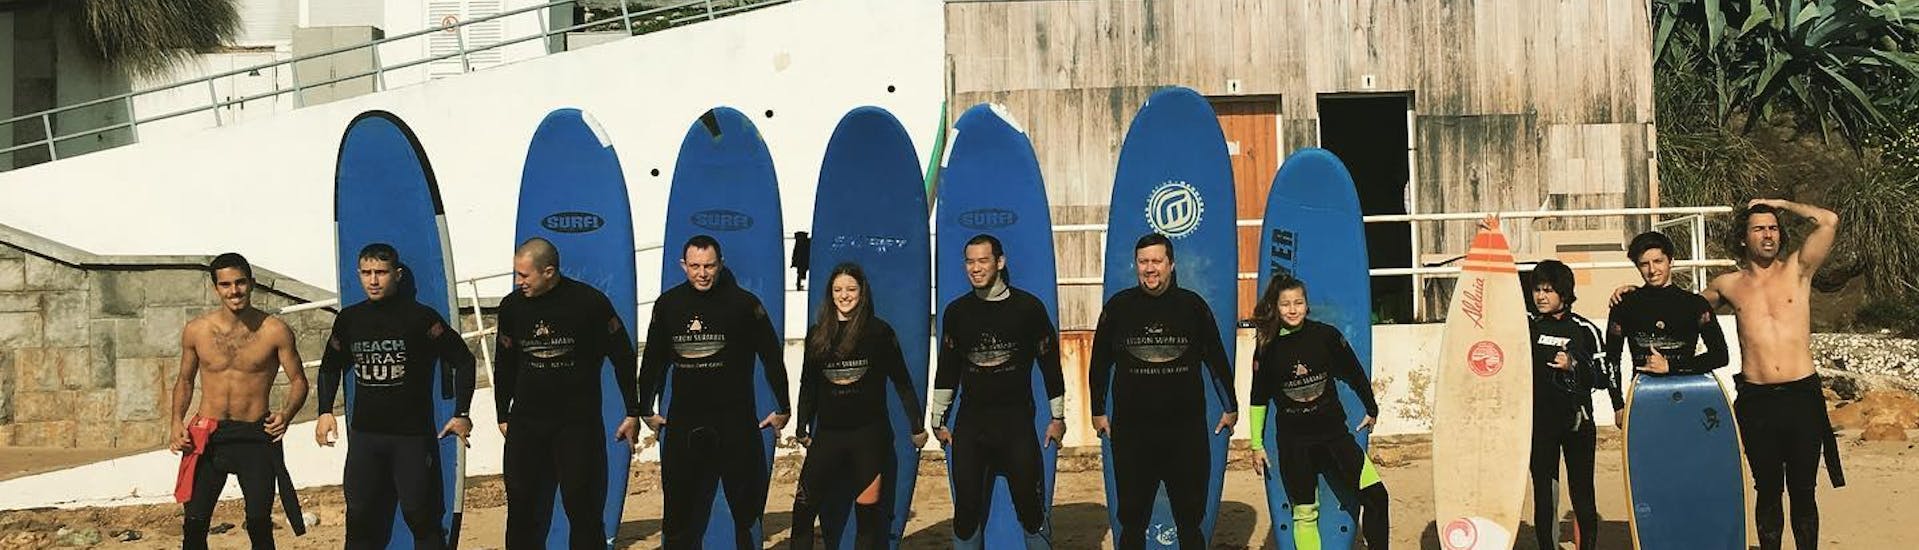 Een groep aspirant-surfers poseren voor een foto naast hun surfinstructeurs van Lisbon Surfaris voordat ze beginnen met hun surflessen op het strand van Carcavelos bij Lissabon.